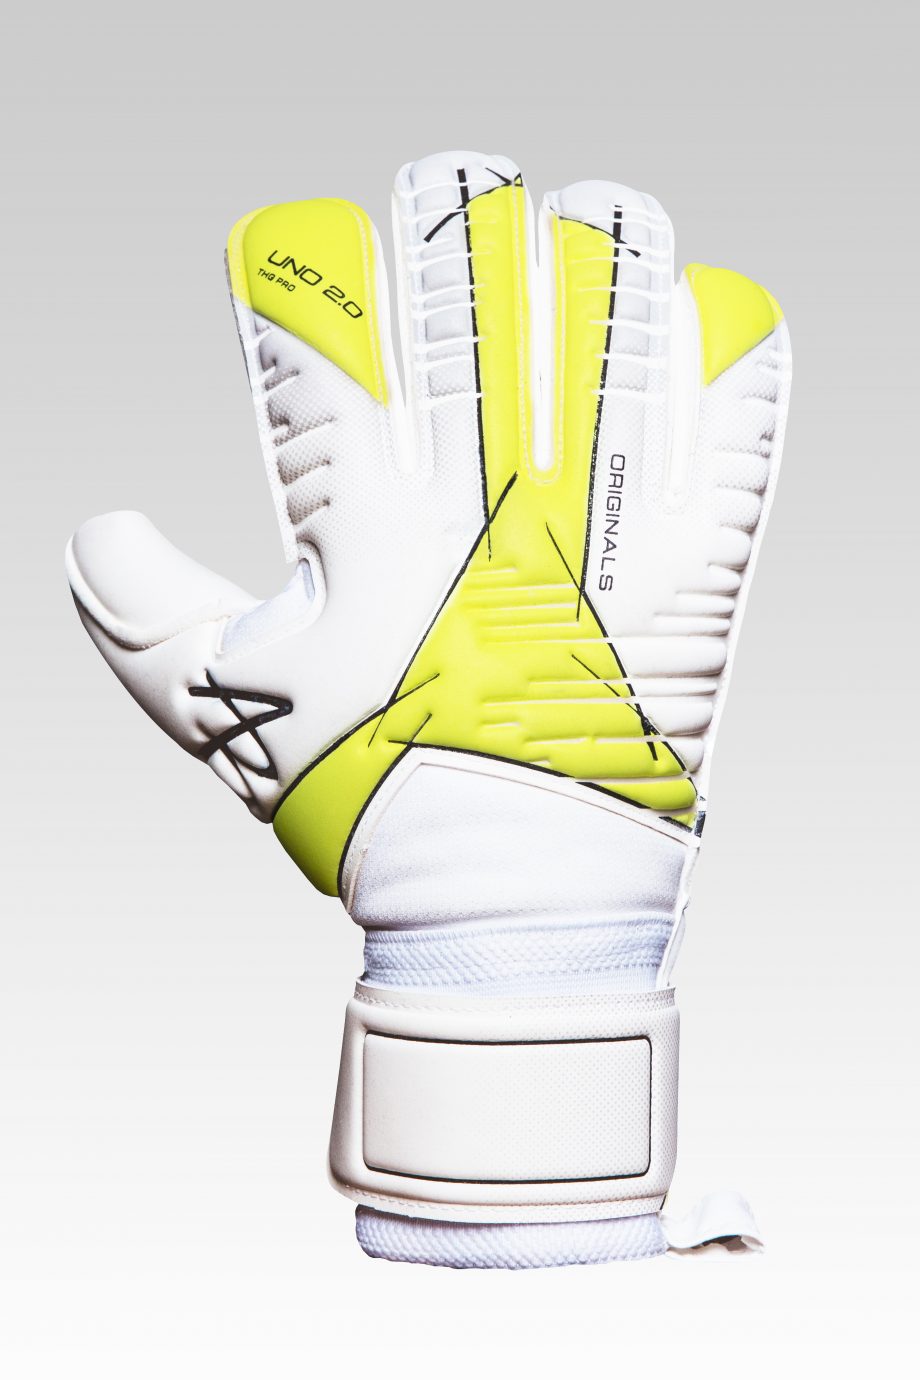 THG Pro Roll Goalkeeper Gloves – Tom Heaton Gloves